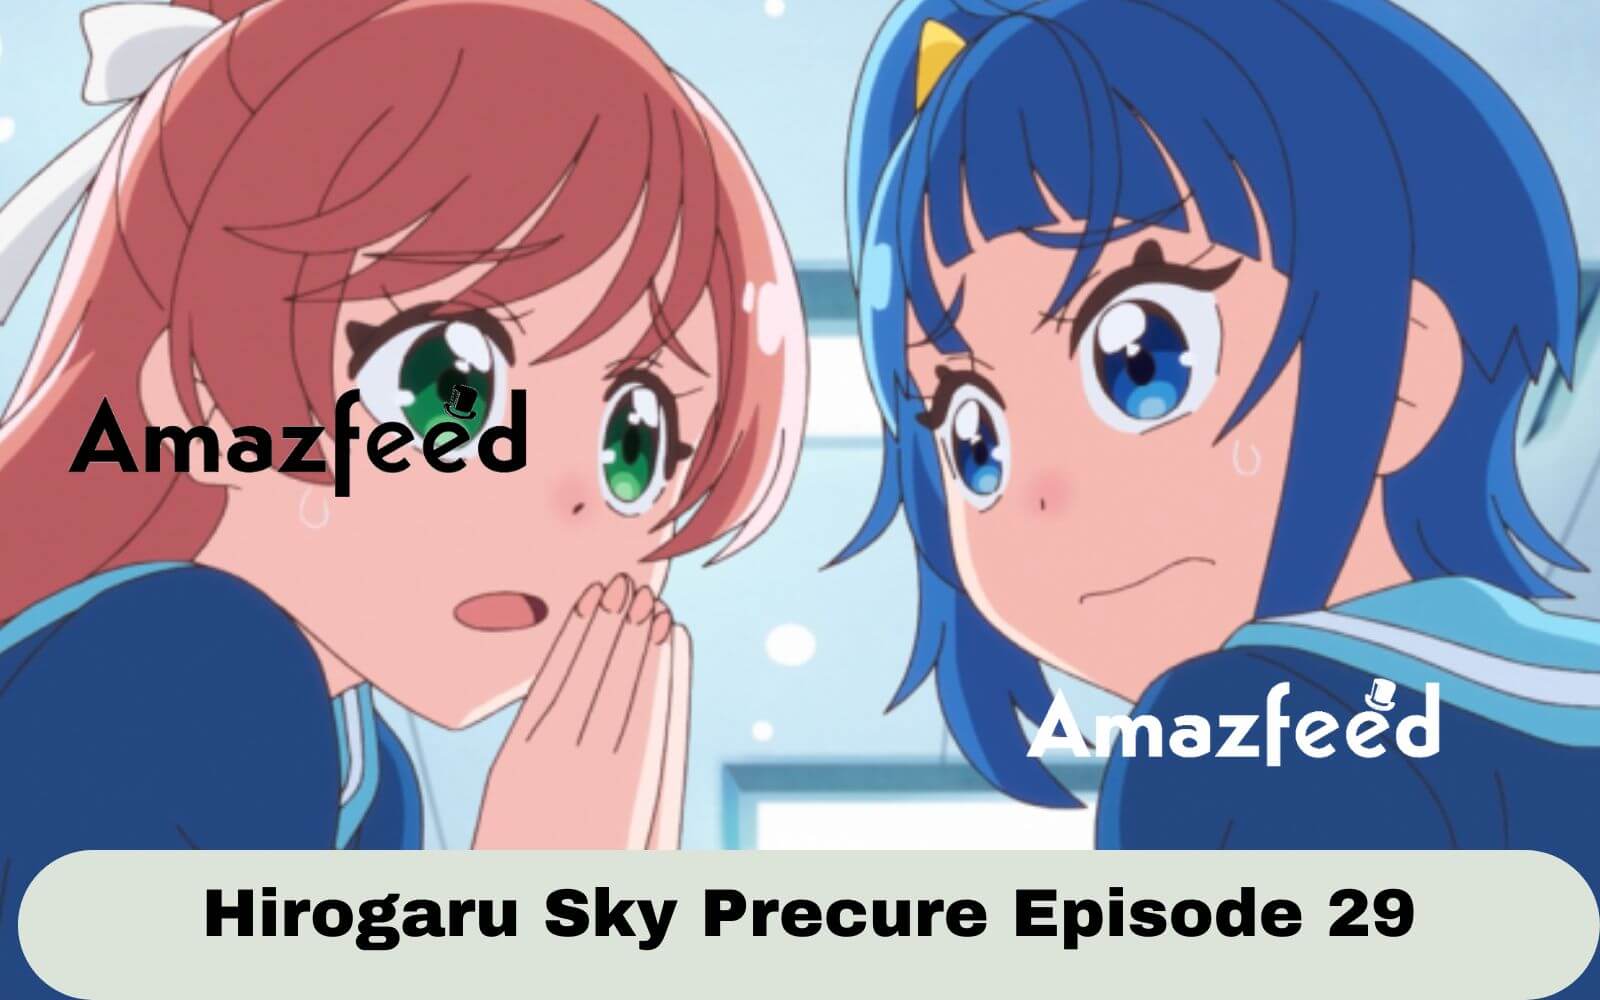 Hirogaru sky precure episode 4 review